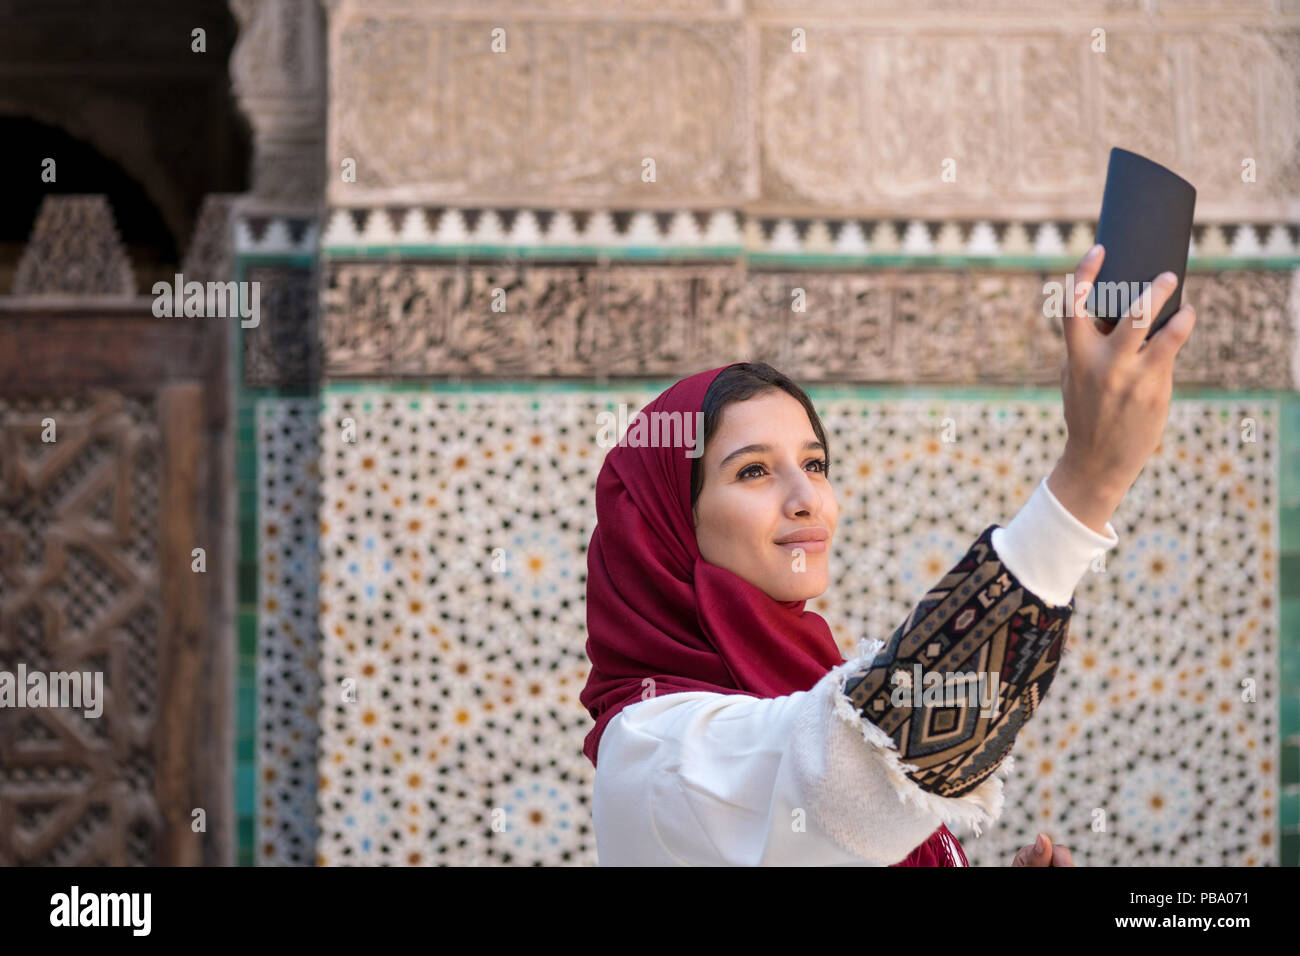 Giovane donna musulmana tenendo selfie con telefono cellulare in abbigliamento tradizionale con velo di colore rosso Foto Stock